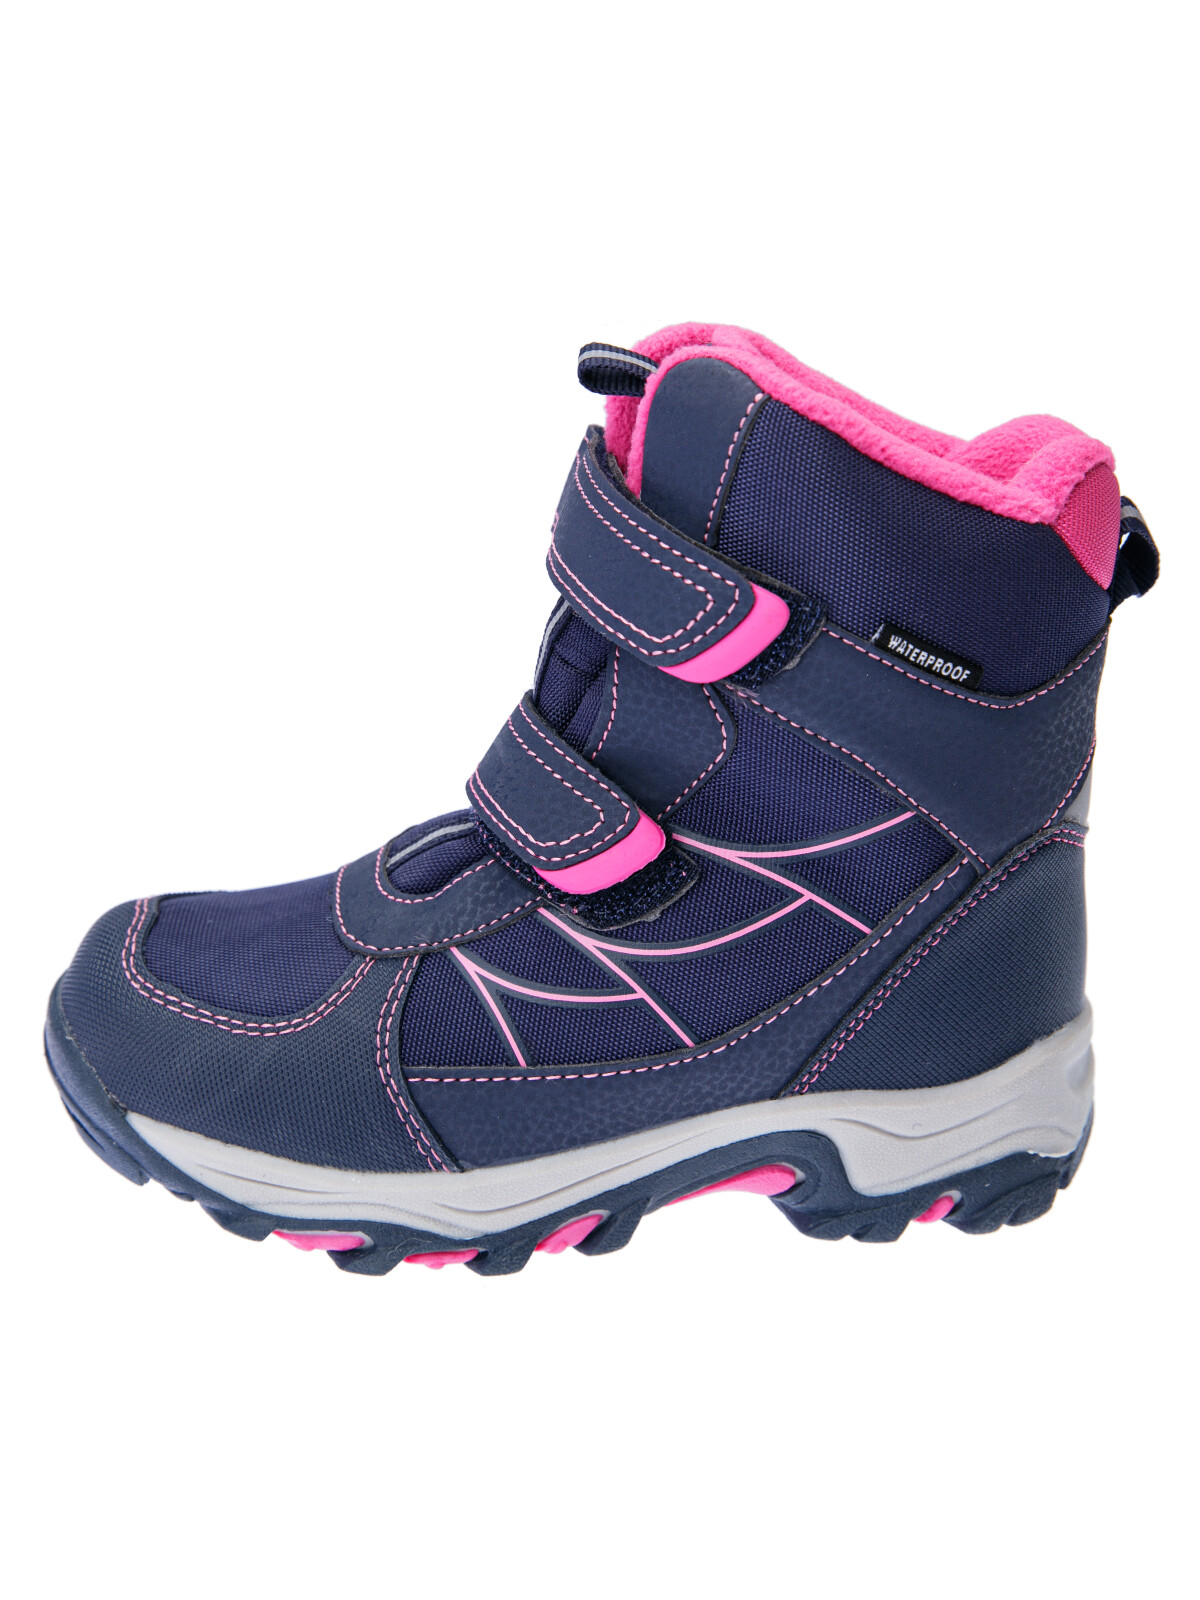 Зимние мембранные ботинки для девочки PlayToday, тёмно-синий,фуксия, 30